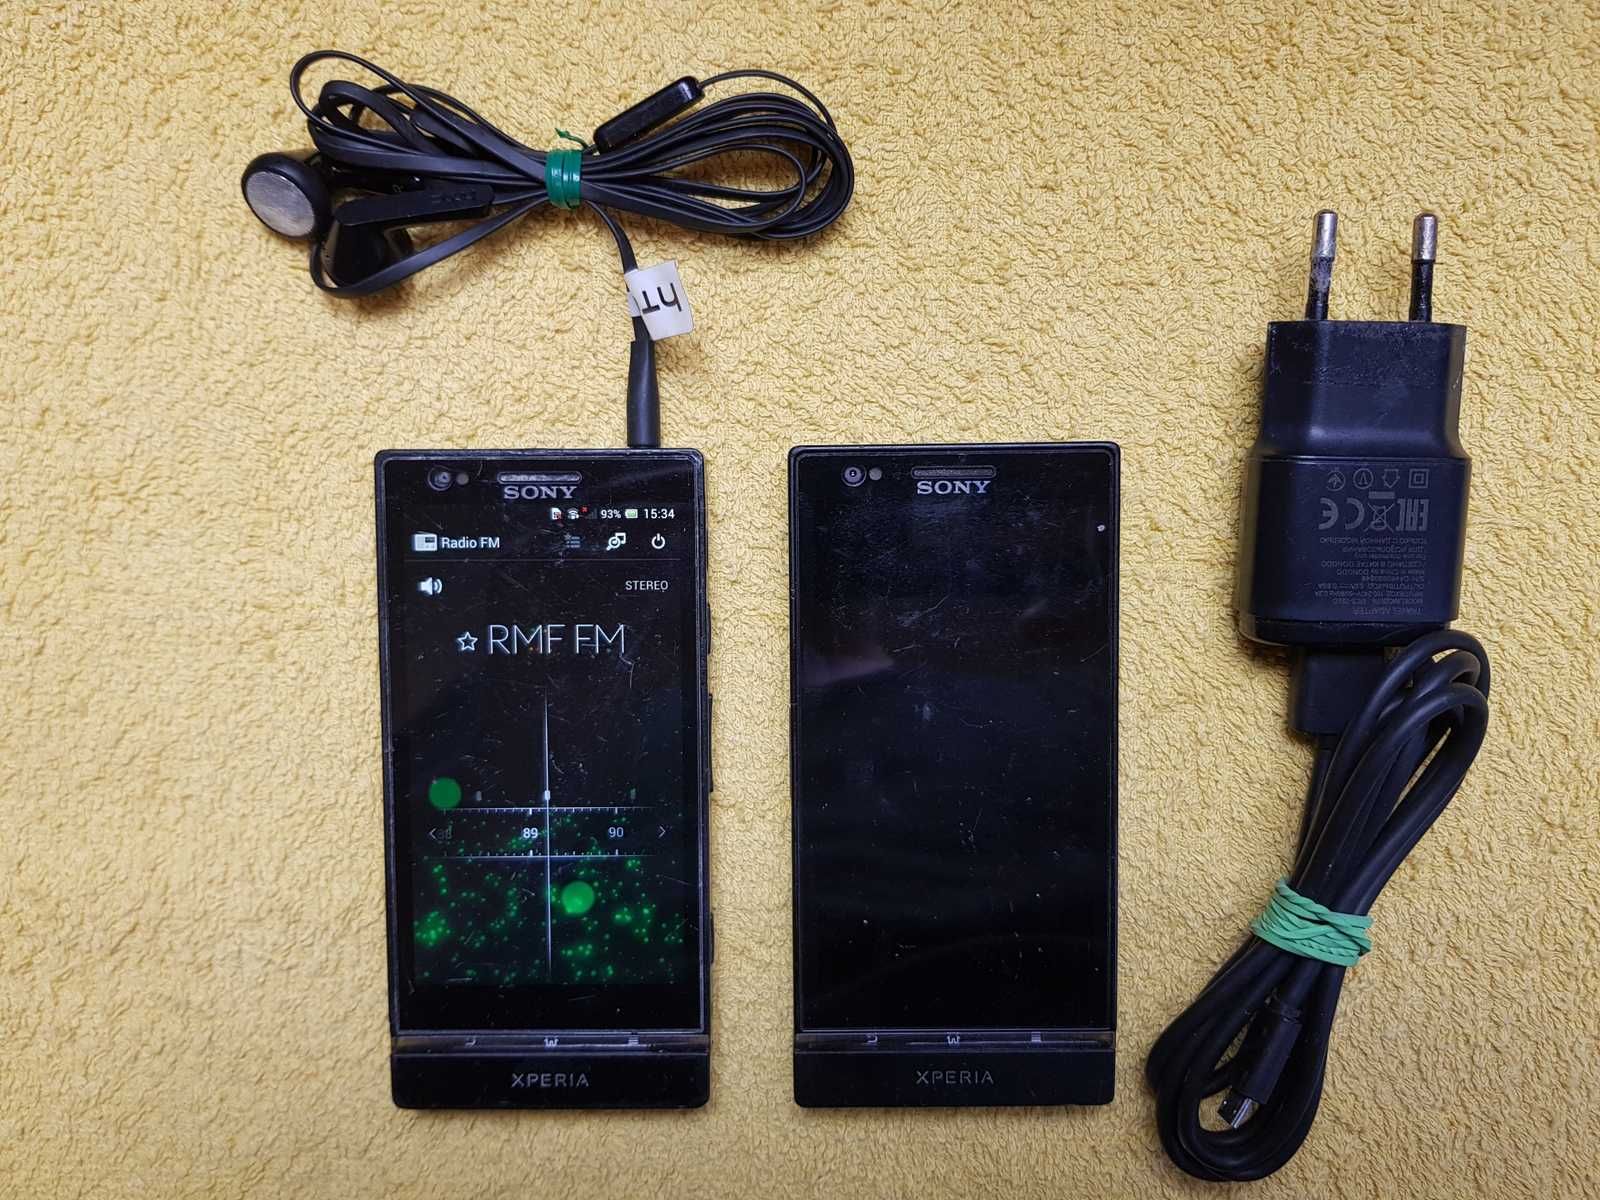 Sony Xperia P LT 22i - ładowarka i słuchawki / 2 szt.